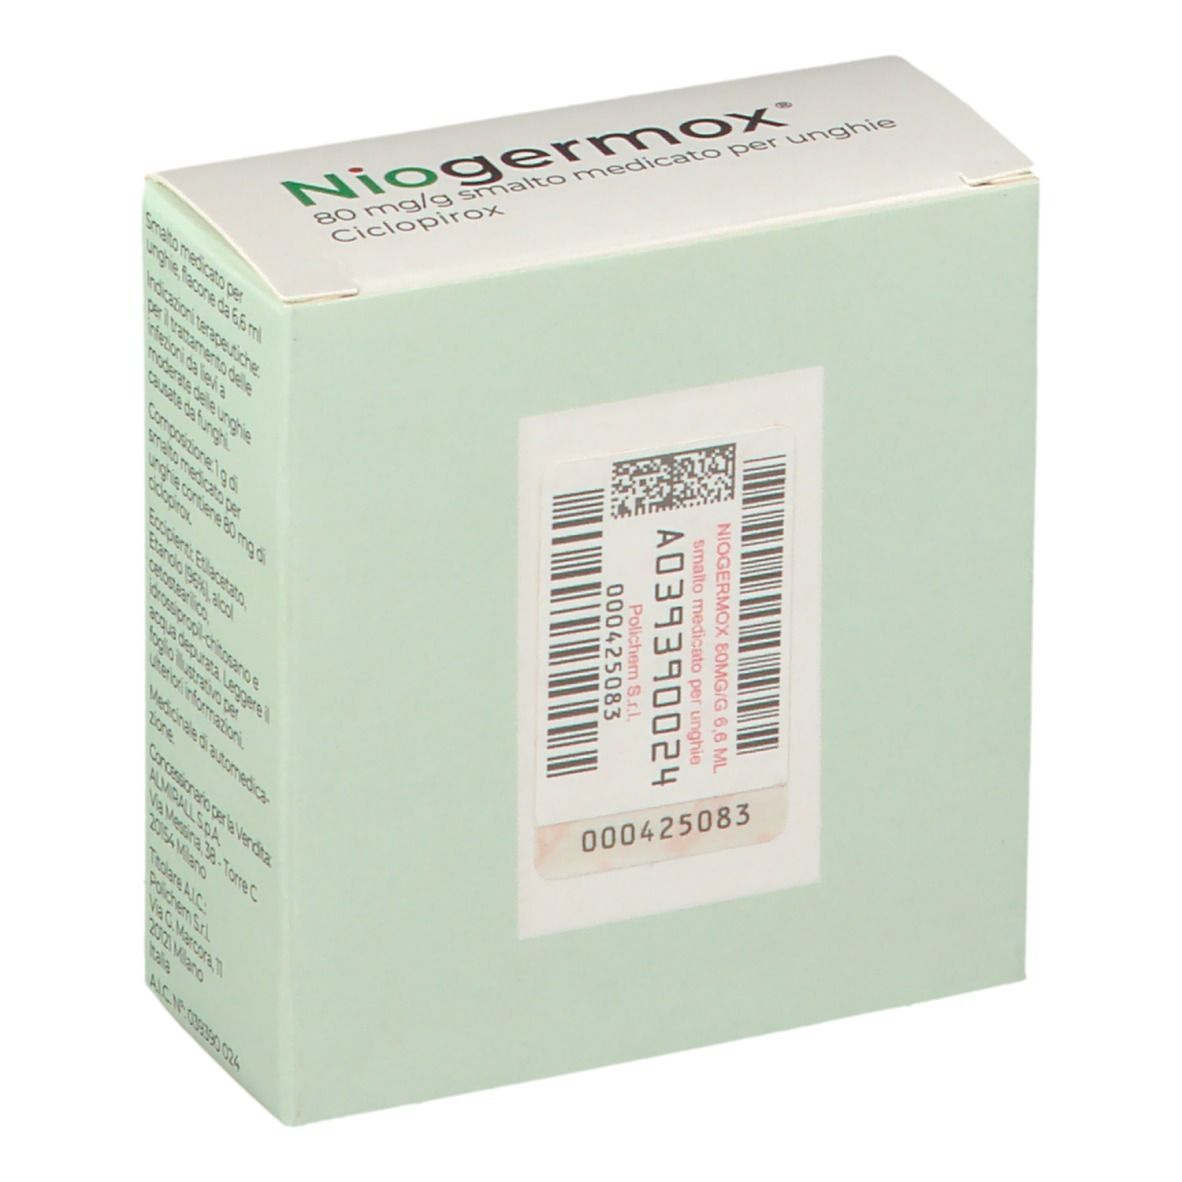 Niogermox® 80 mg/g smalto medicato per unghie 6,6 ml